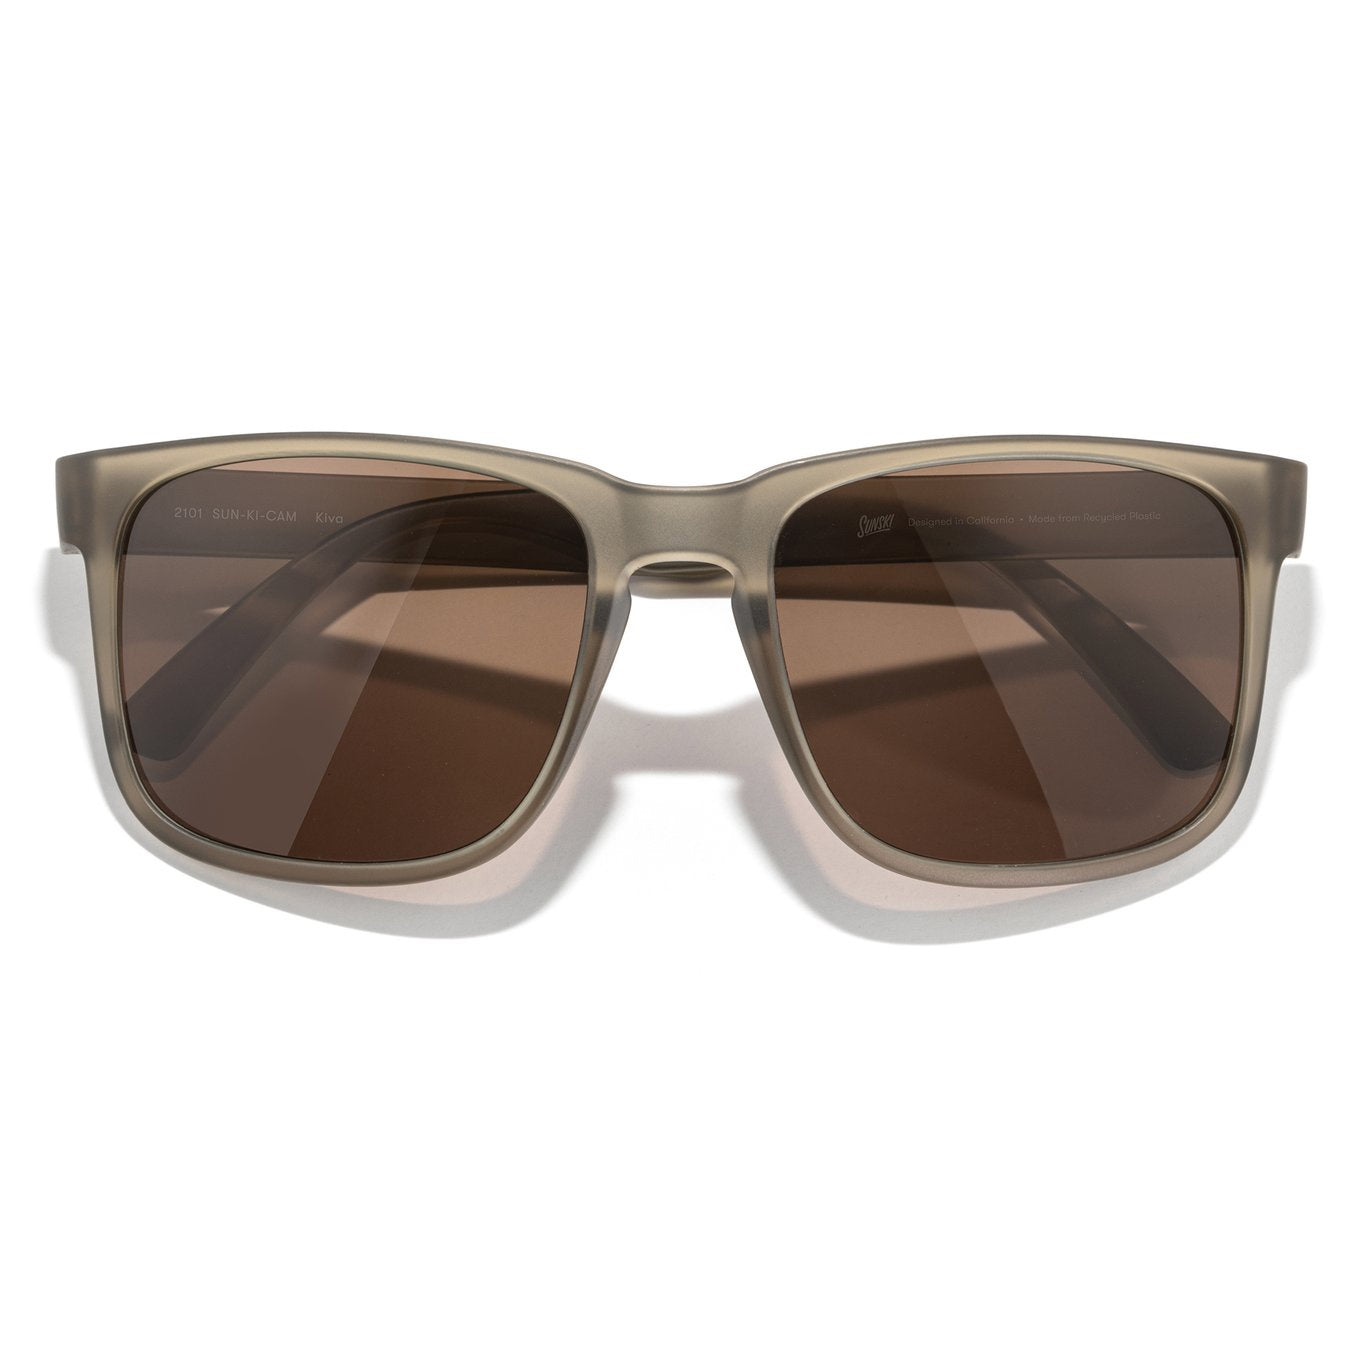 SUNSKI Sunglasses - Kiva Matte Cola Amber